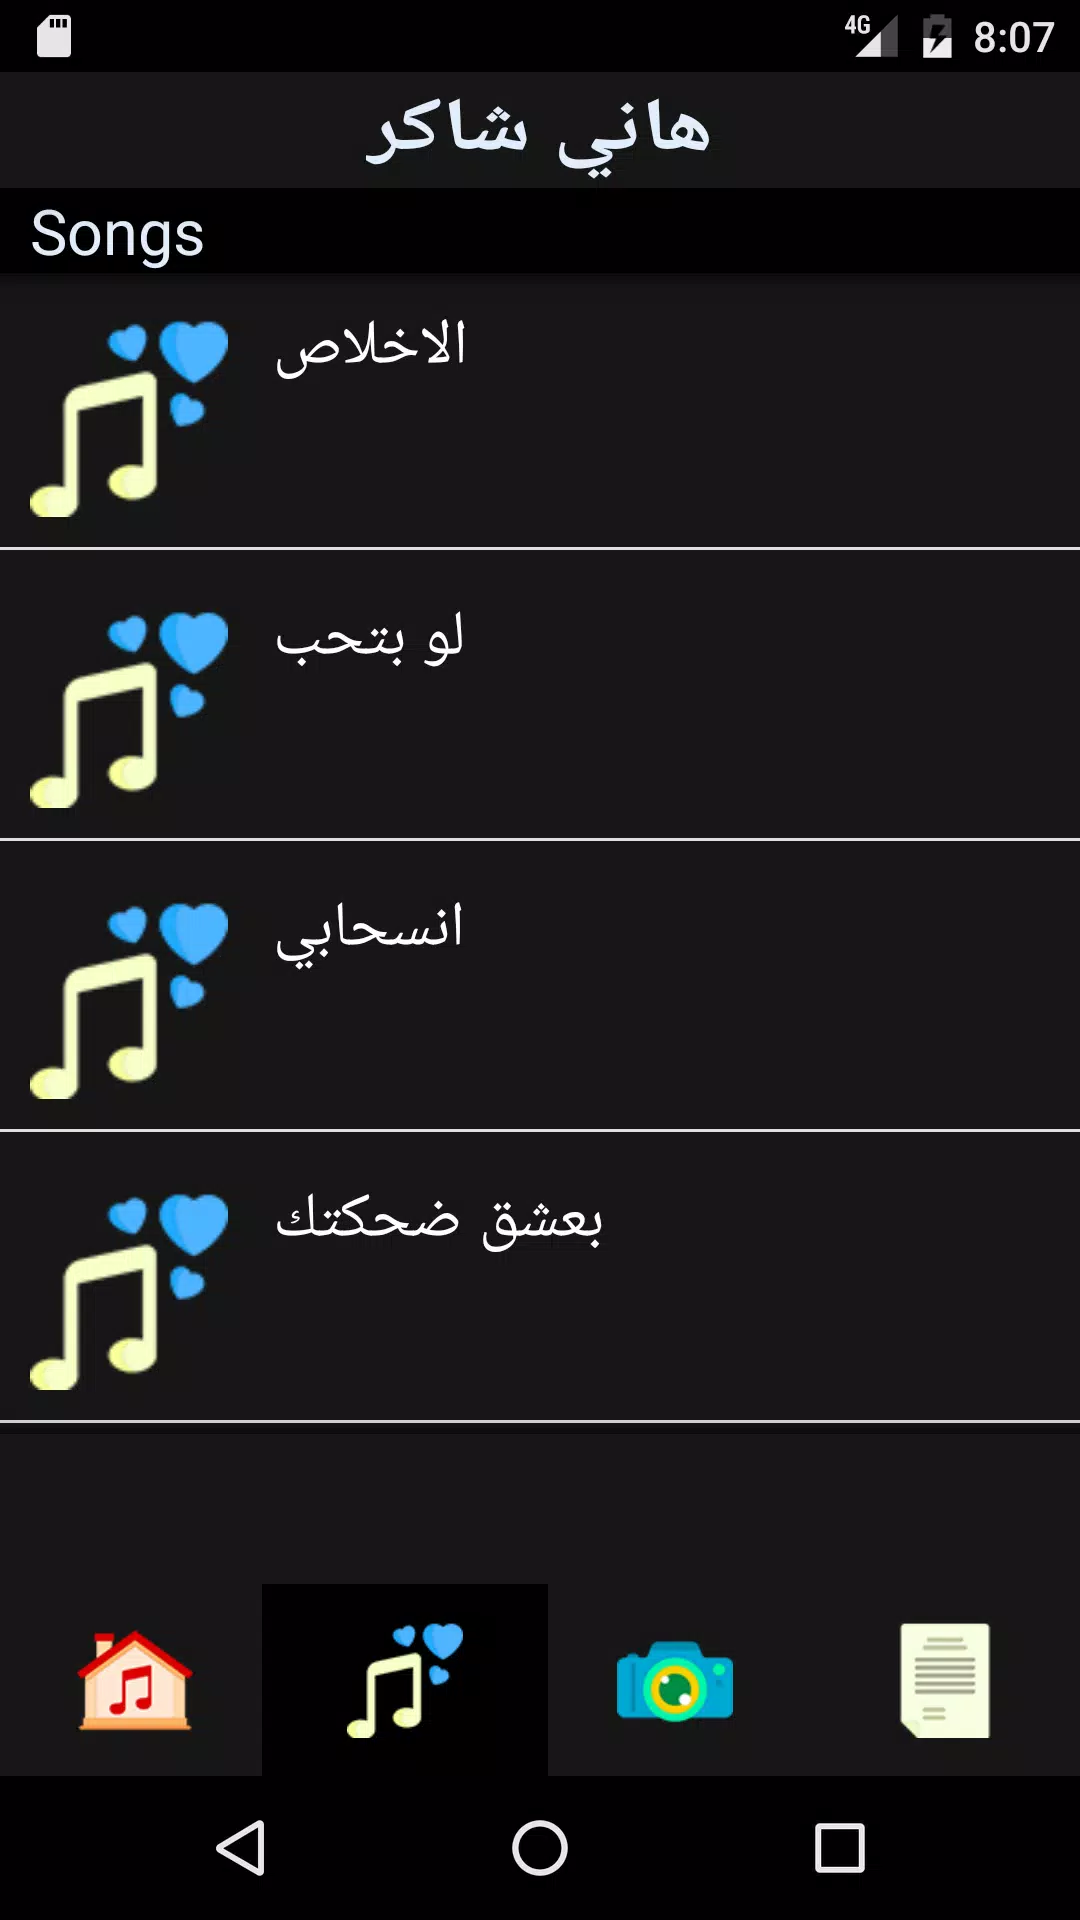 أغاني هاني شاكر APK for Android Download